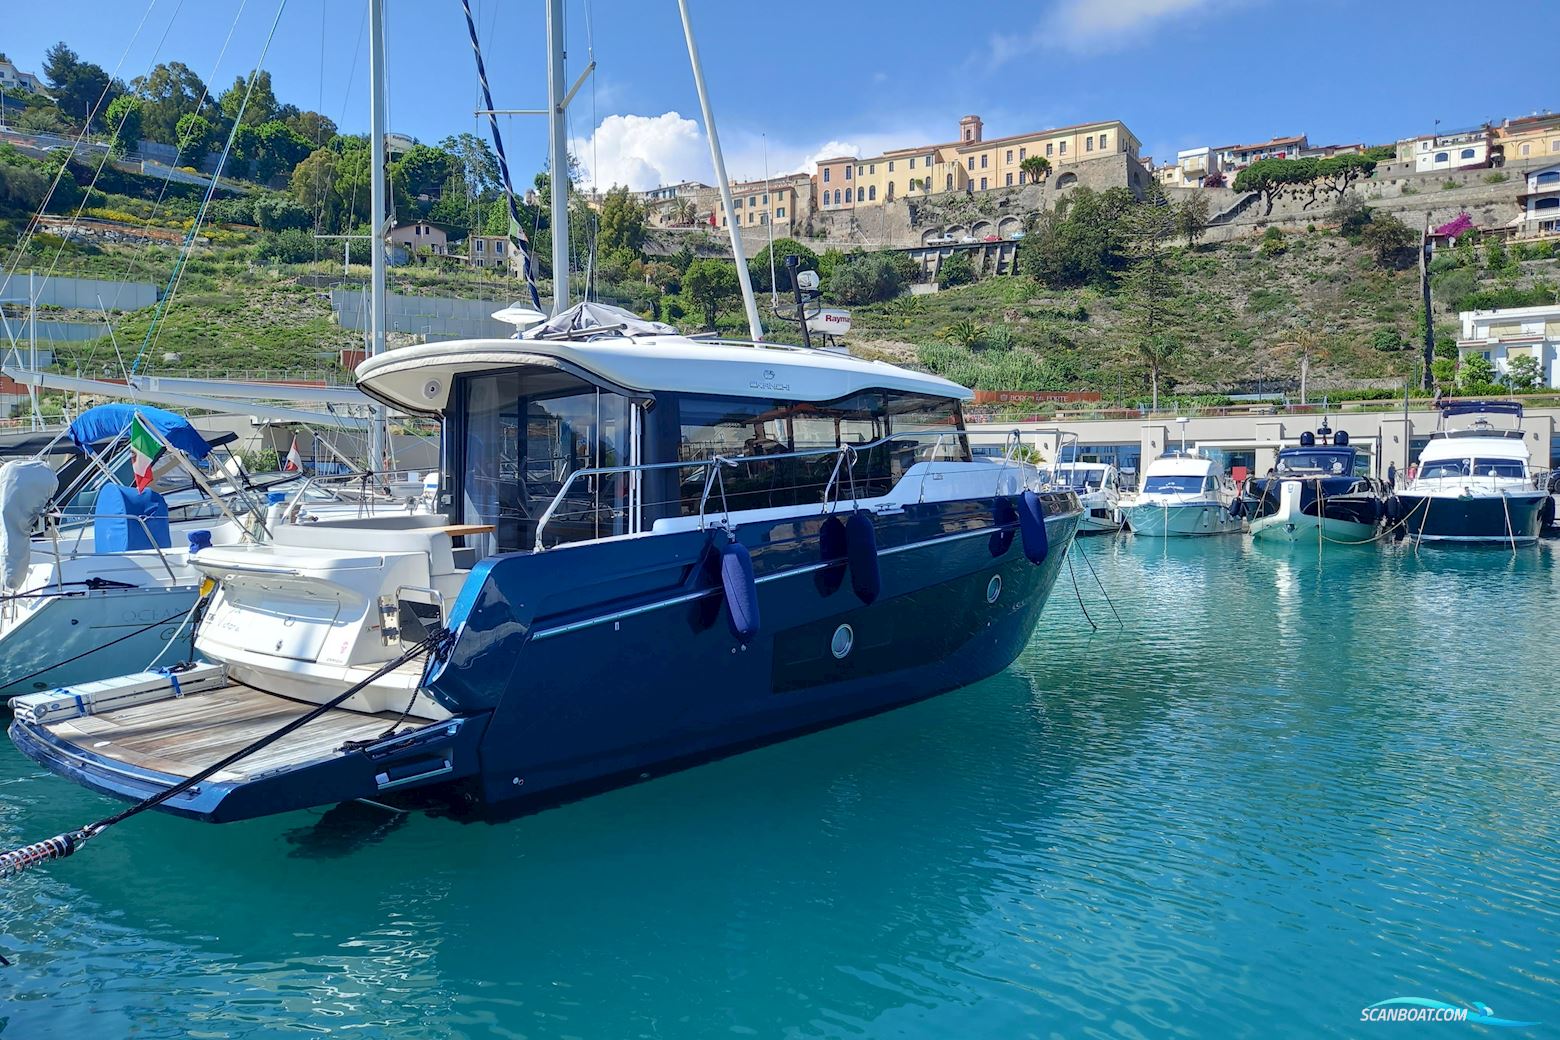 Cranchi T36 Crossover Motorbåt 2019, med Volvo Penta motor, Frankrike